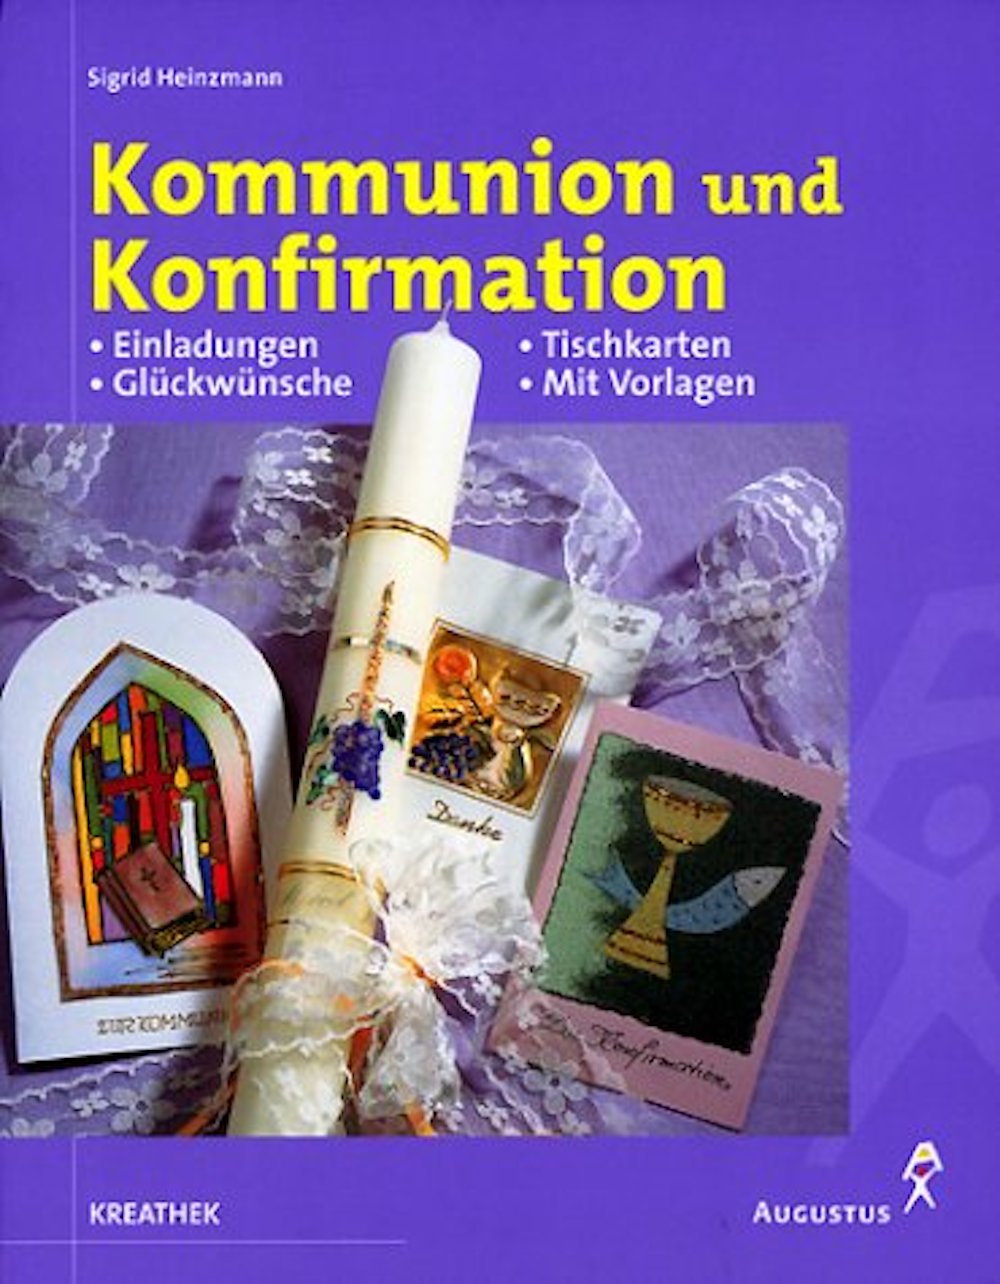 Buch Kommunion und Konfirmation : Einladungen, Glückwünsche ...